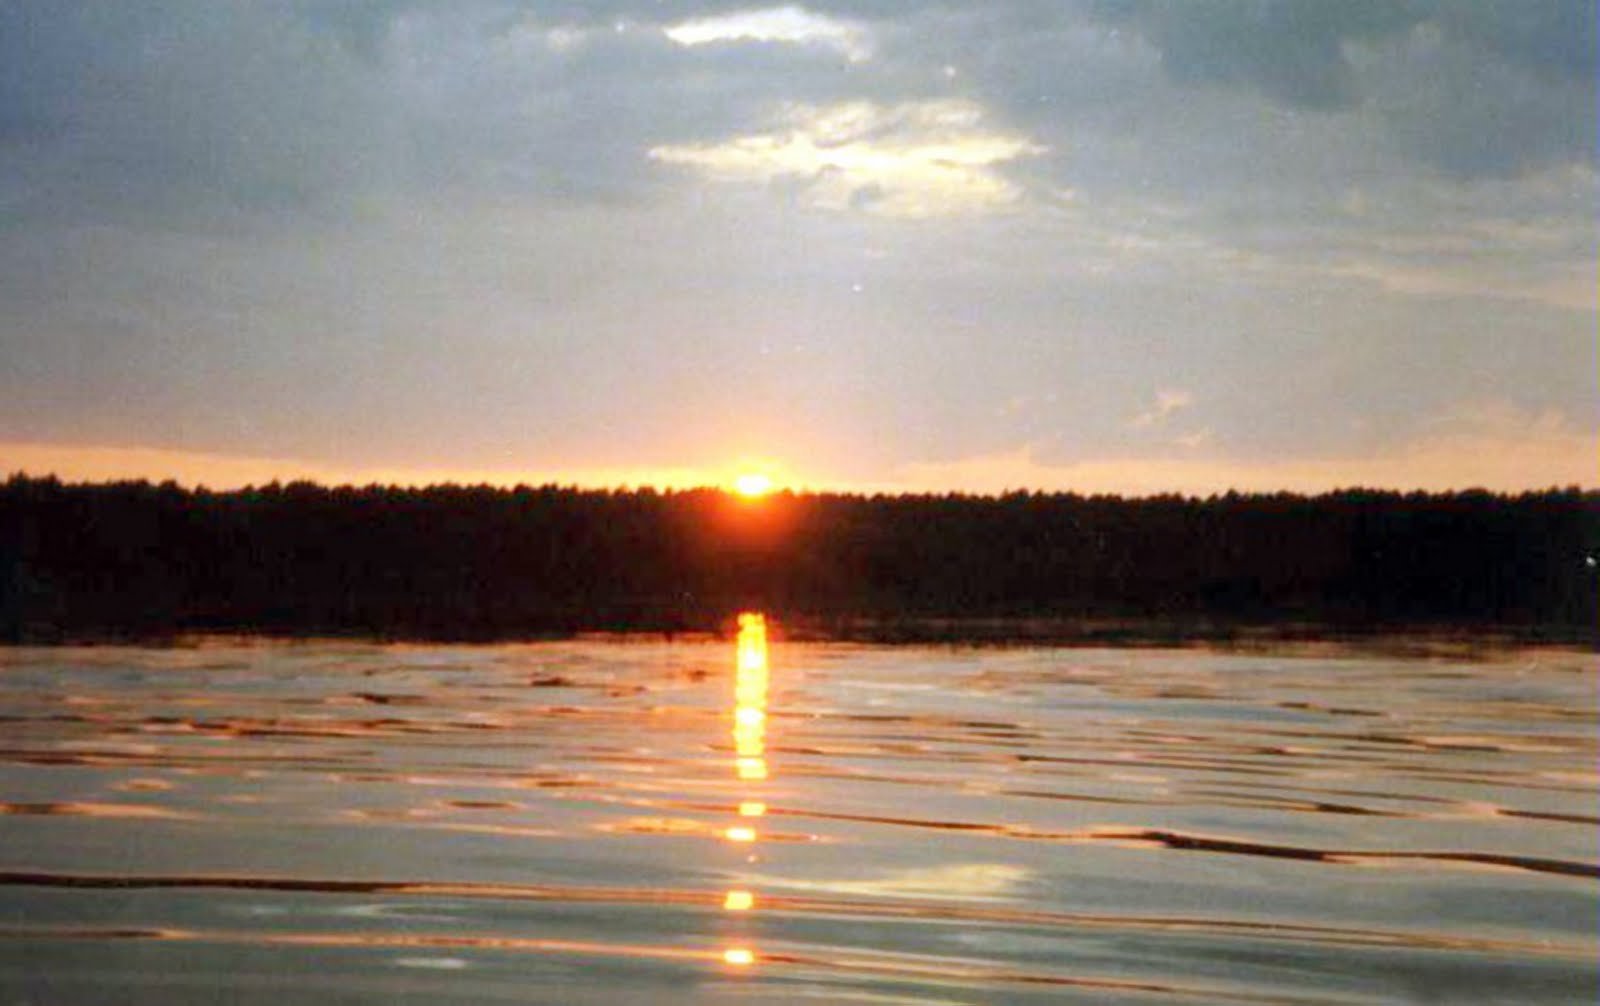 Данилова озера омская